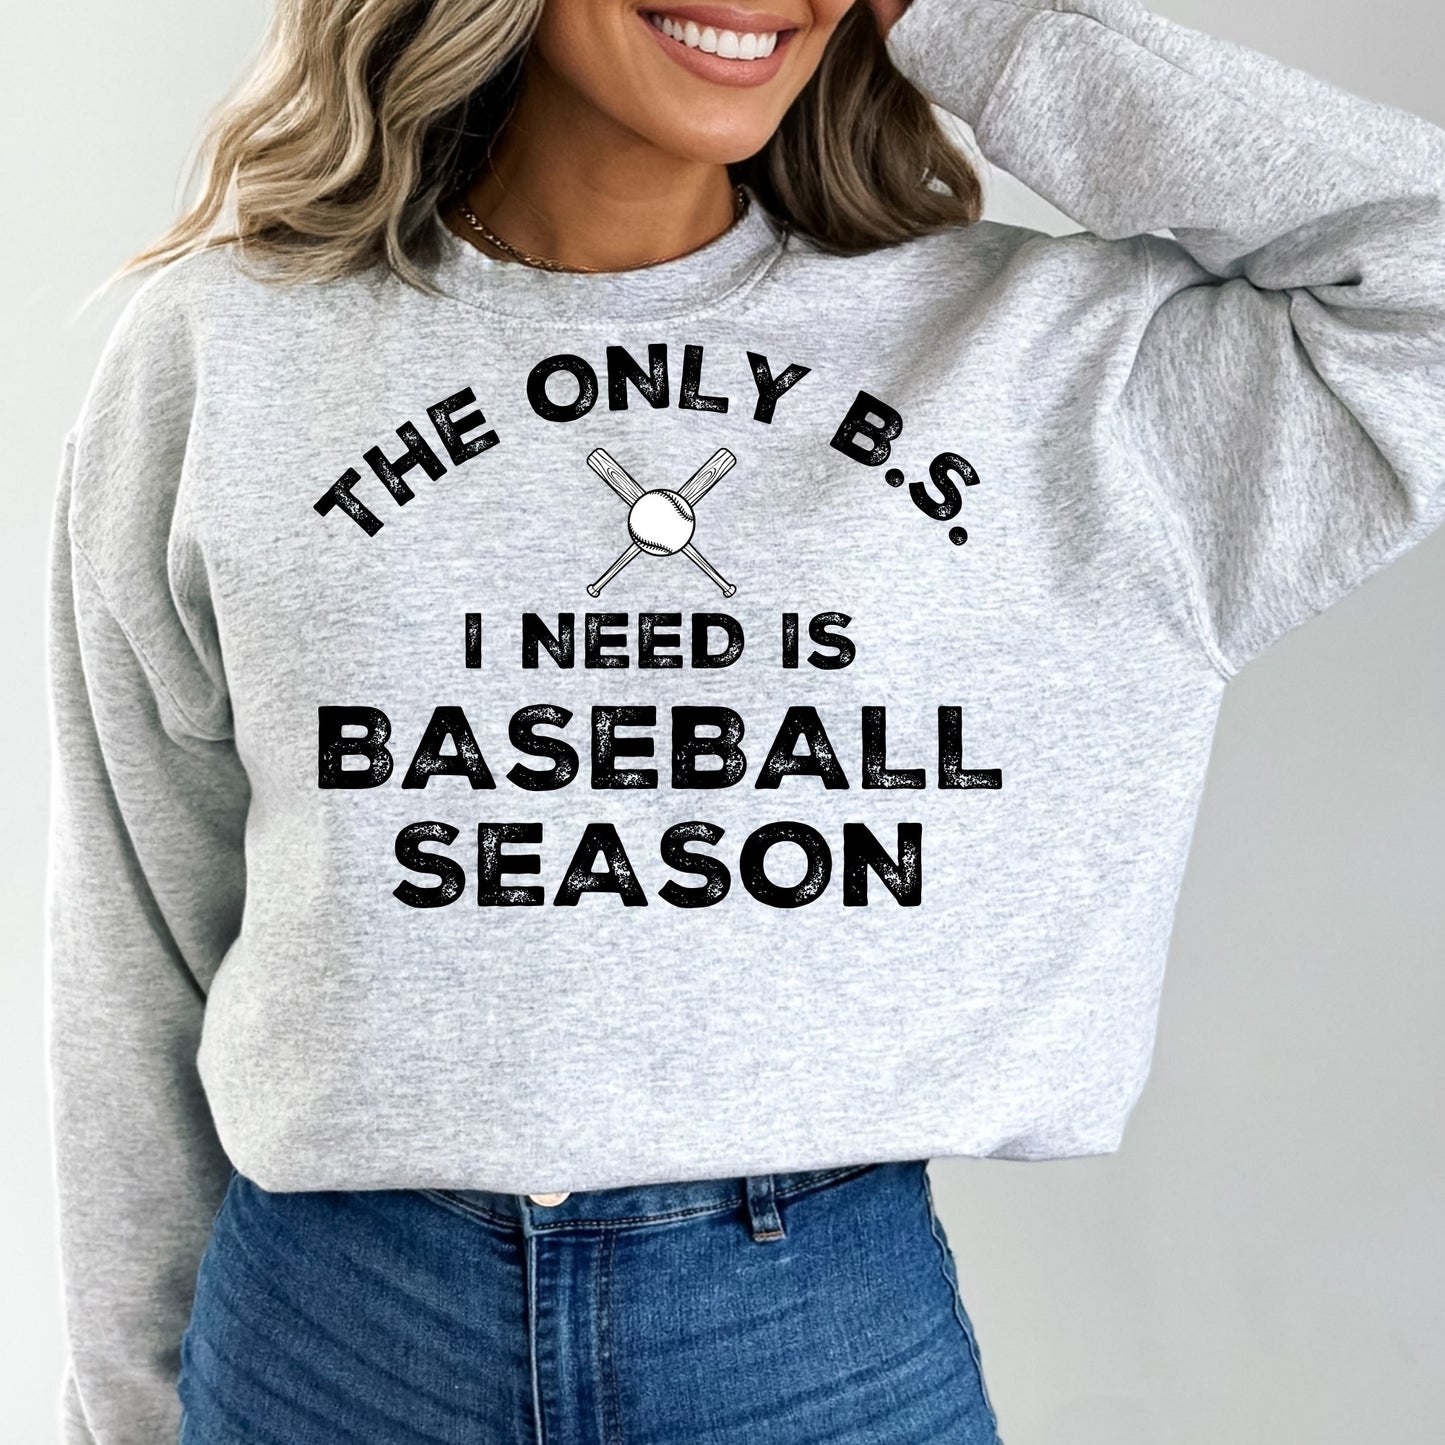 The Only B.S. I need Sweatshirt